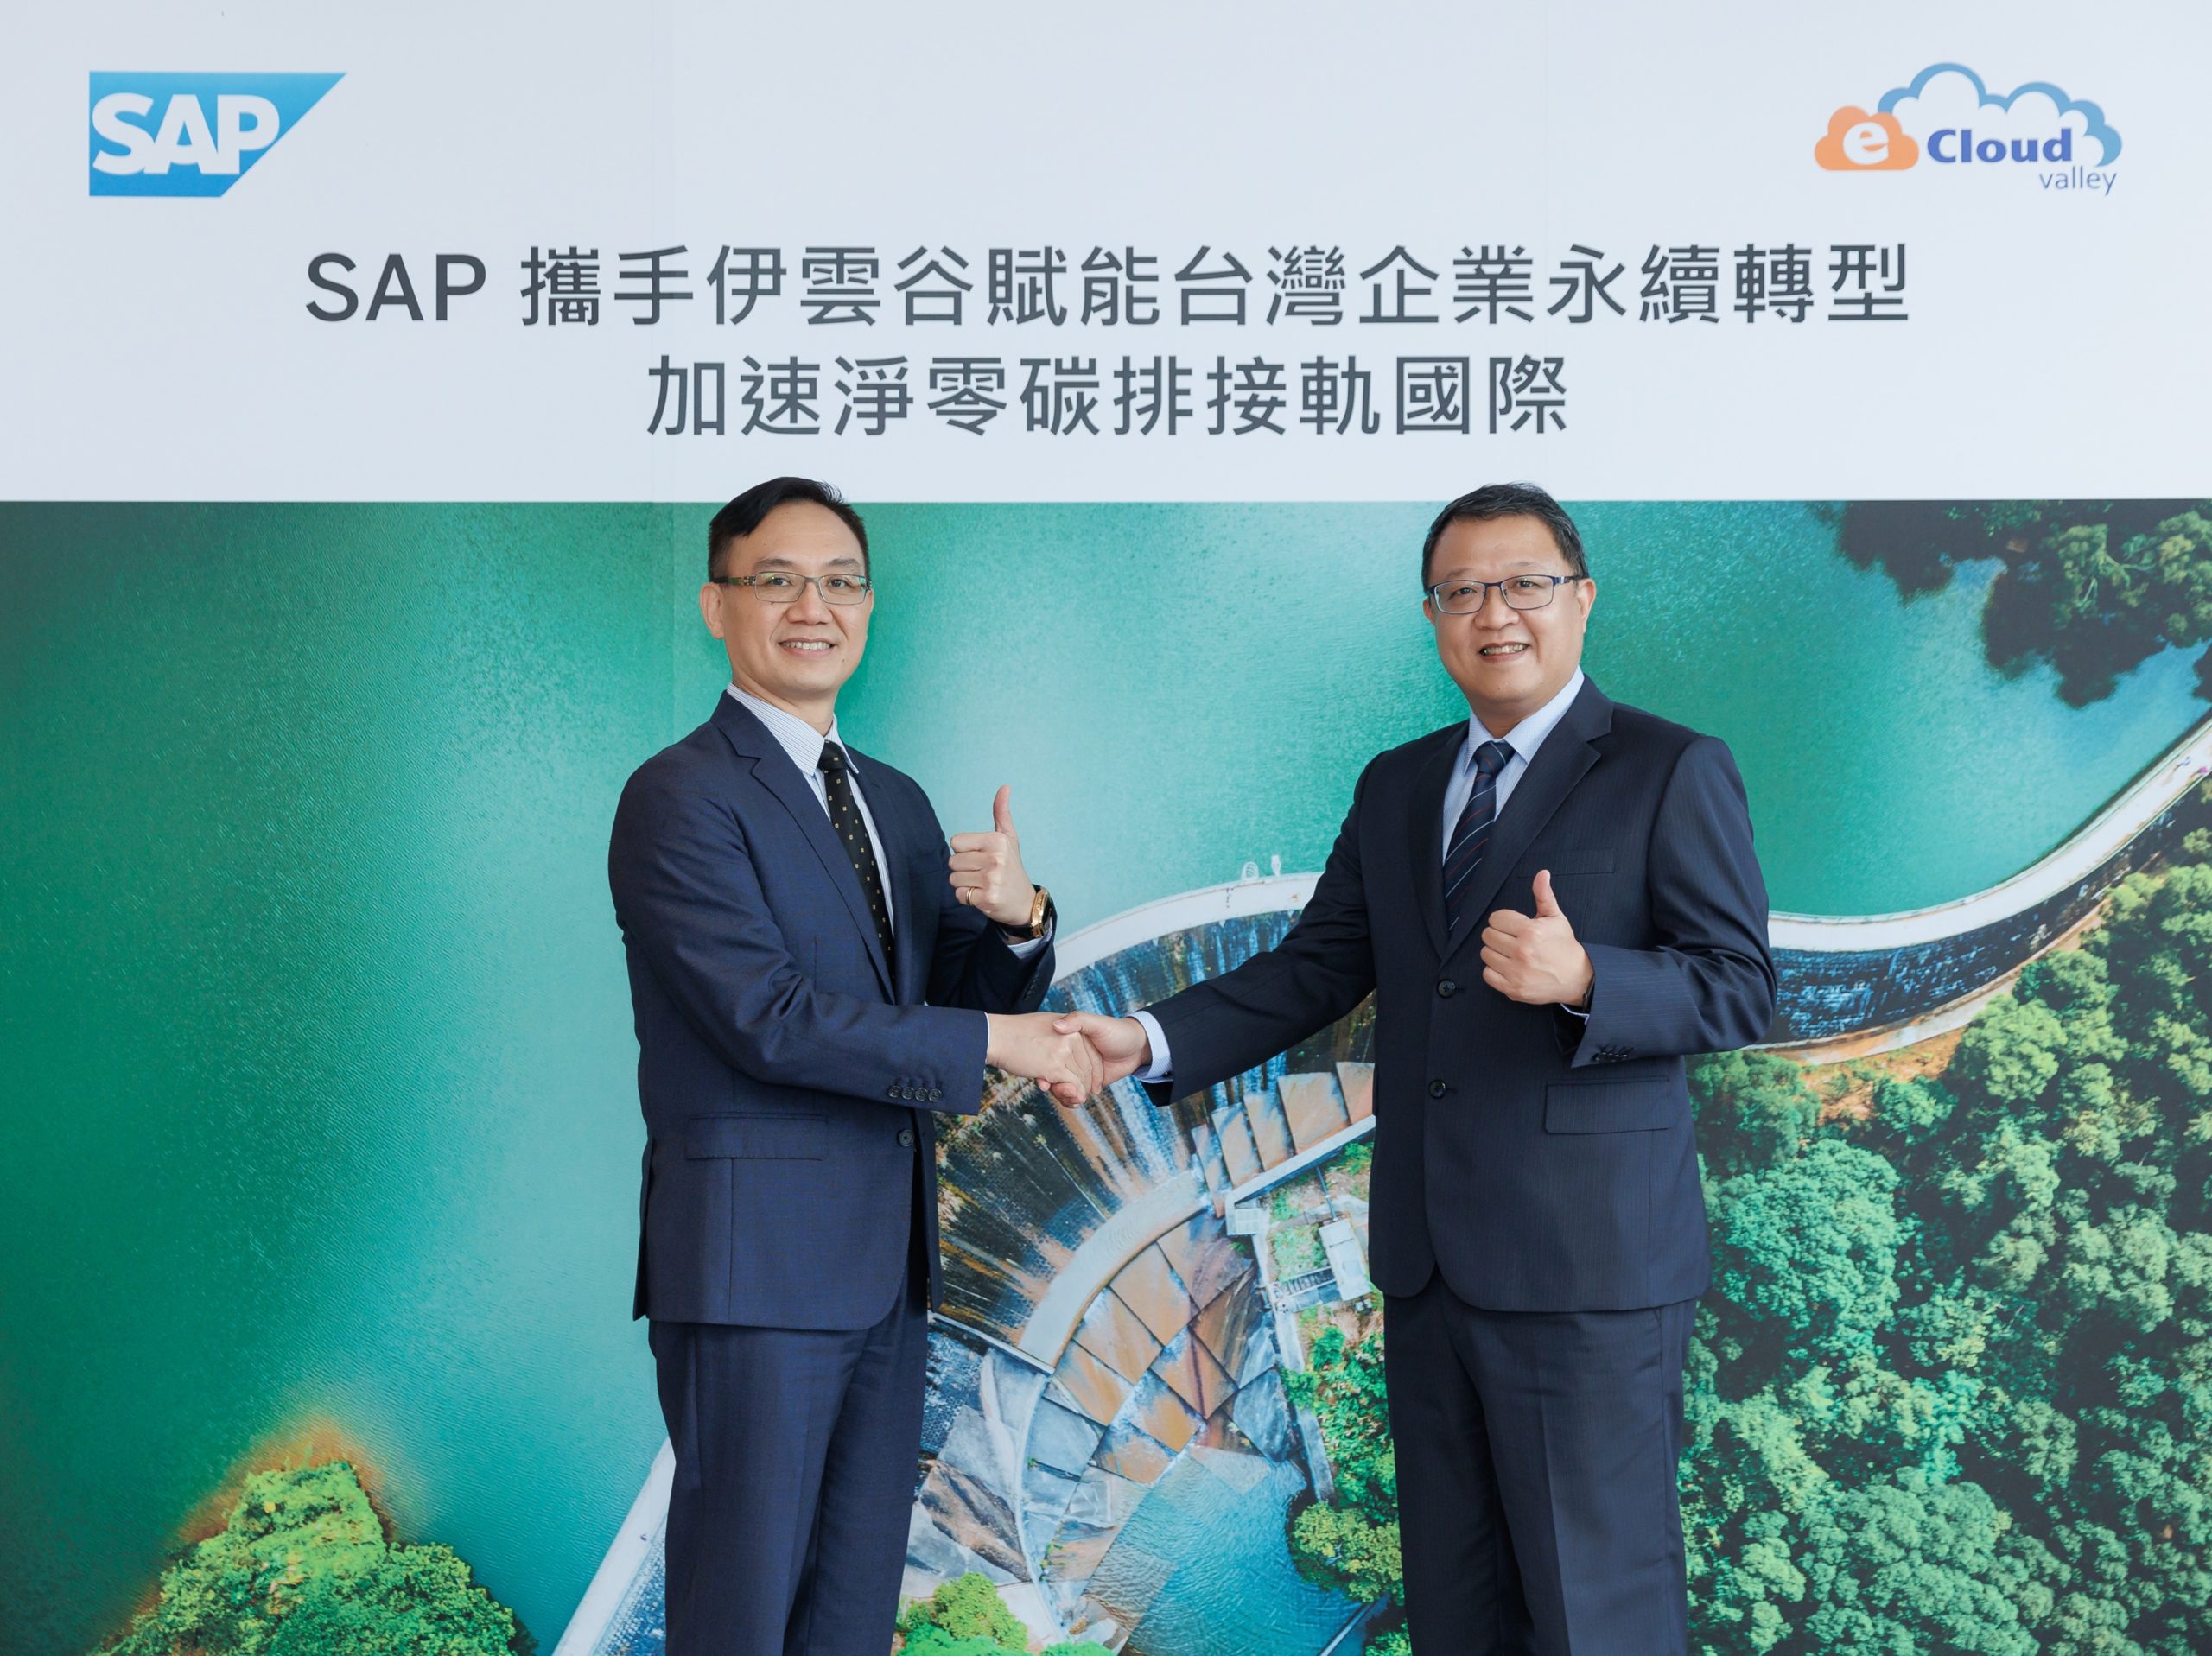 SAP 攜手伊雲谷共同賦能台灣企業永續轉型。圖由左而右為：SAP 全球副總裁、台灣總經理陳志惟、伊雲谷執行長蔡佳宏。